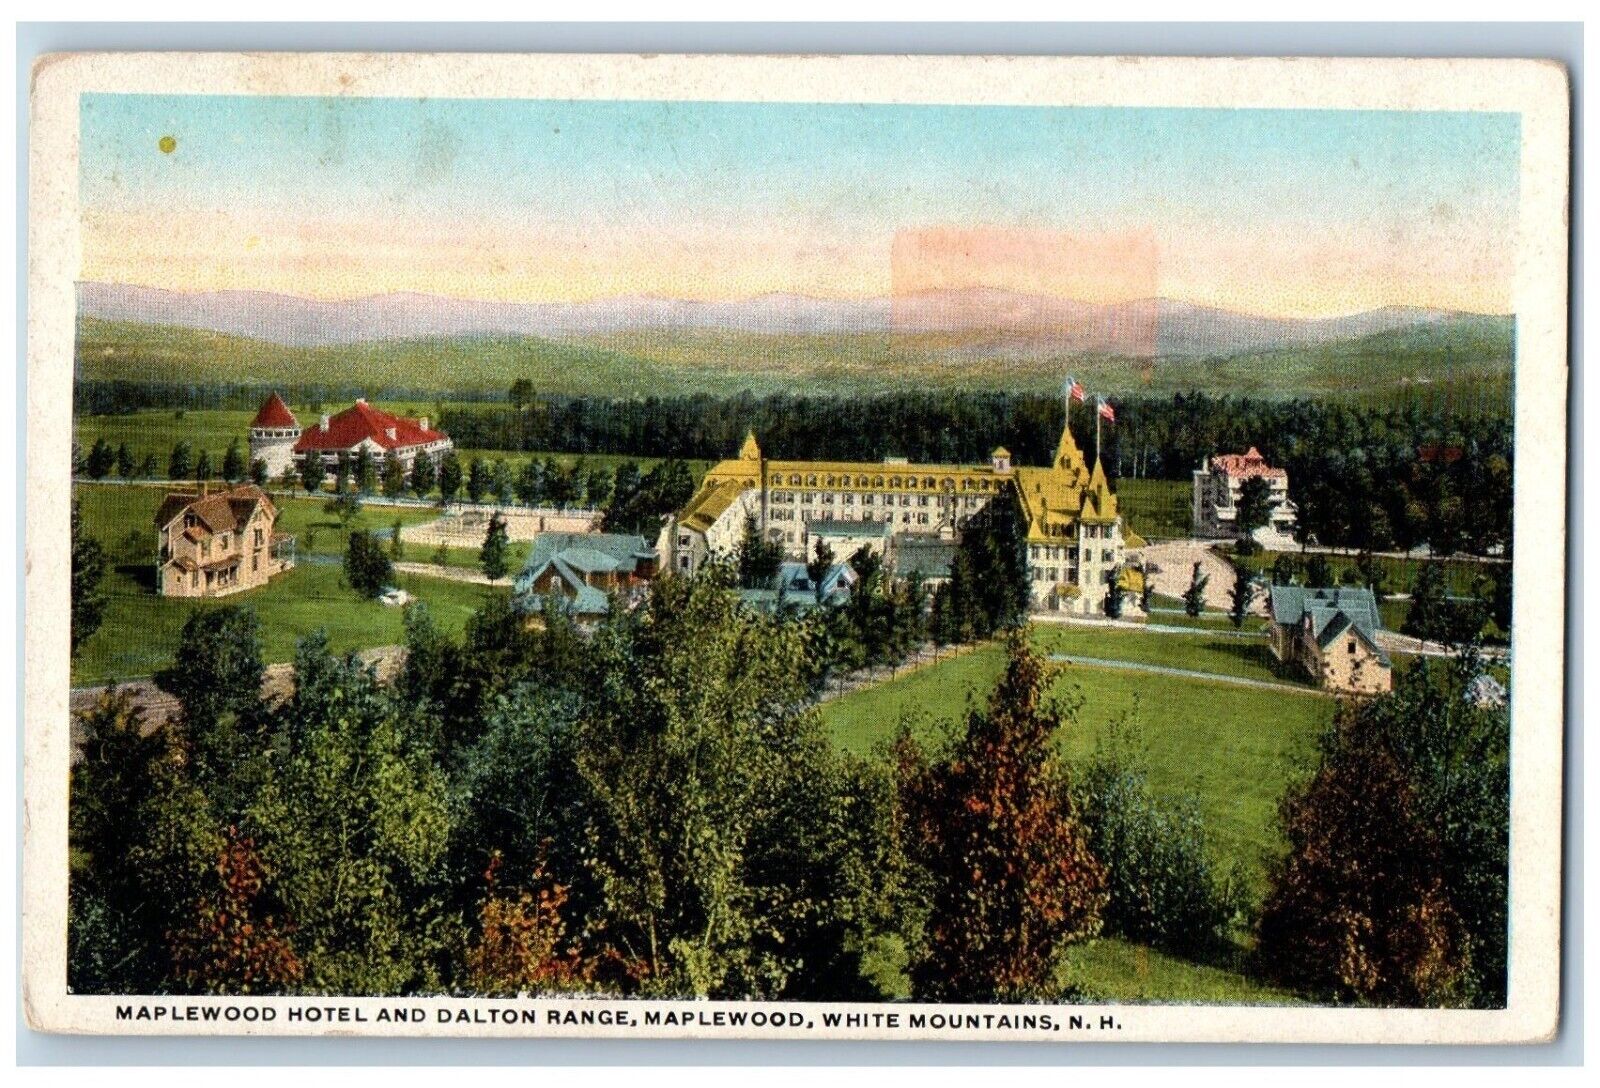 White Mountains New Hampshire Postcard Maplewood Hotel Dalton Range 1920 Vintage